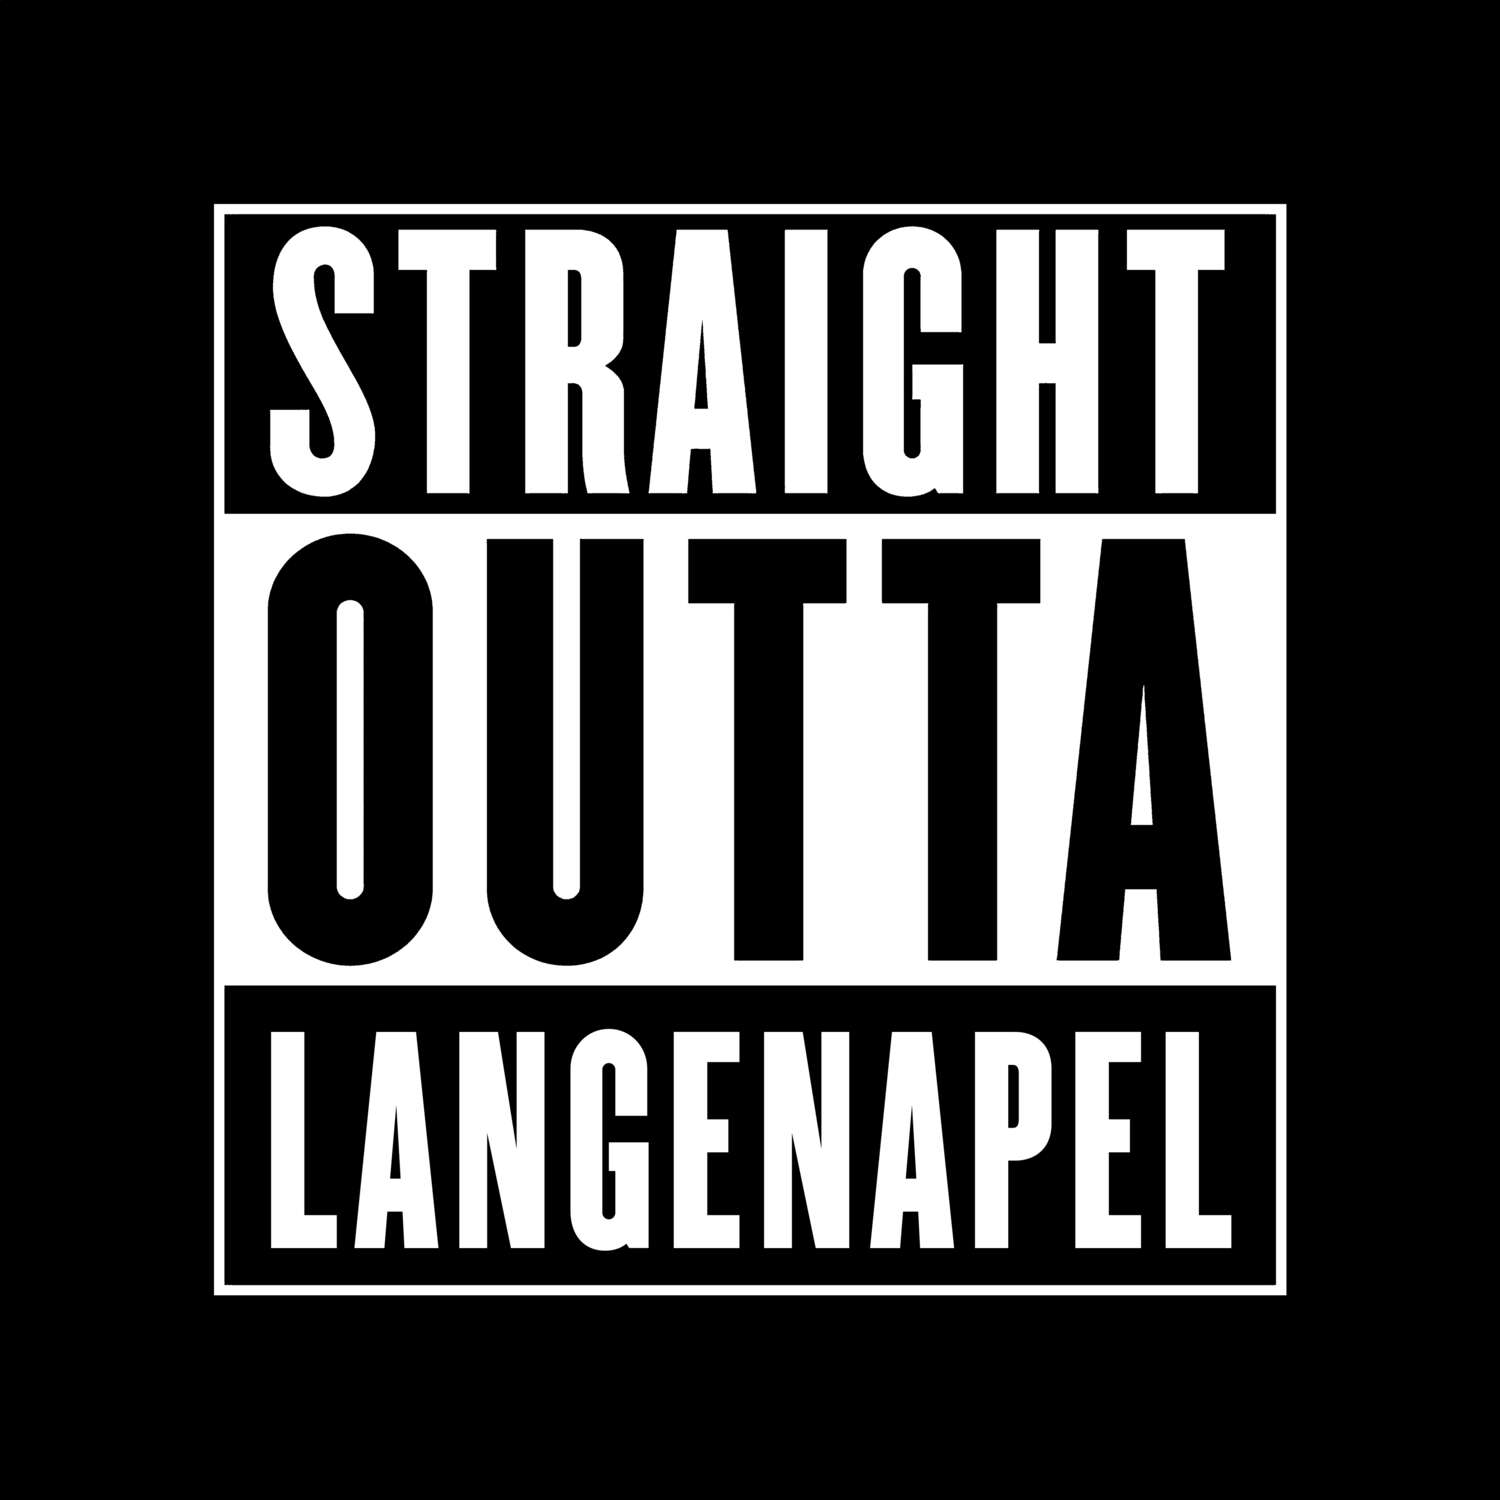 Langenapel T-Shirt »Straight Outta«